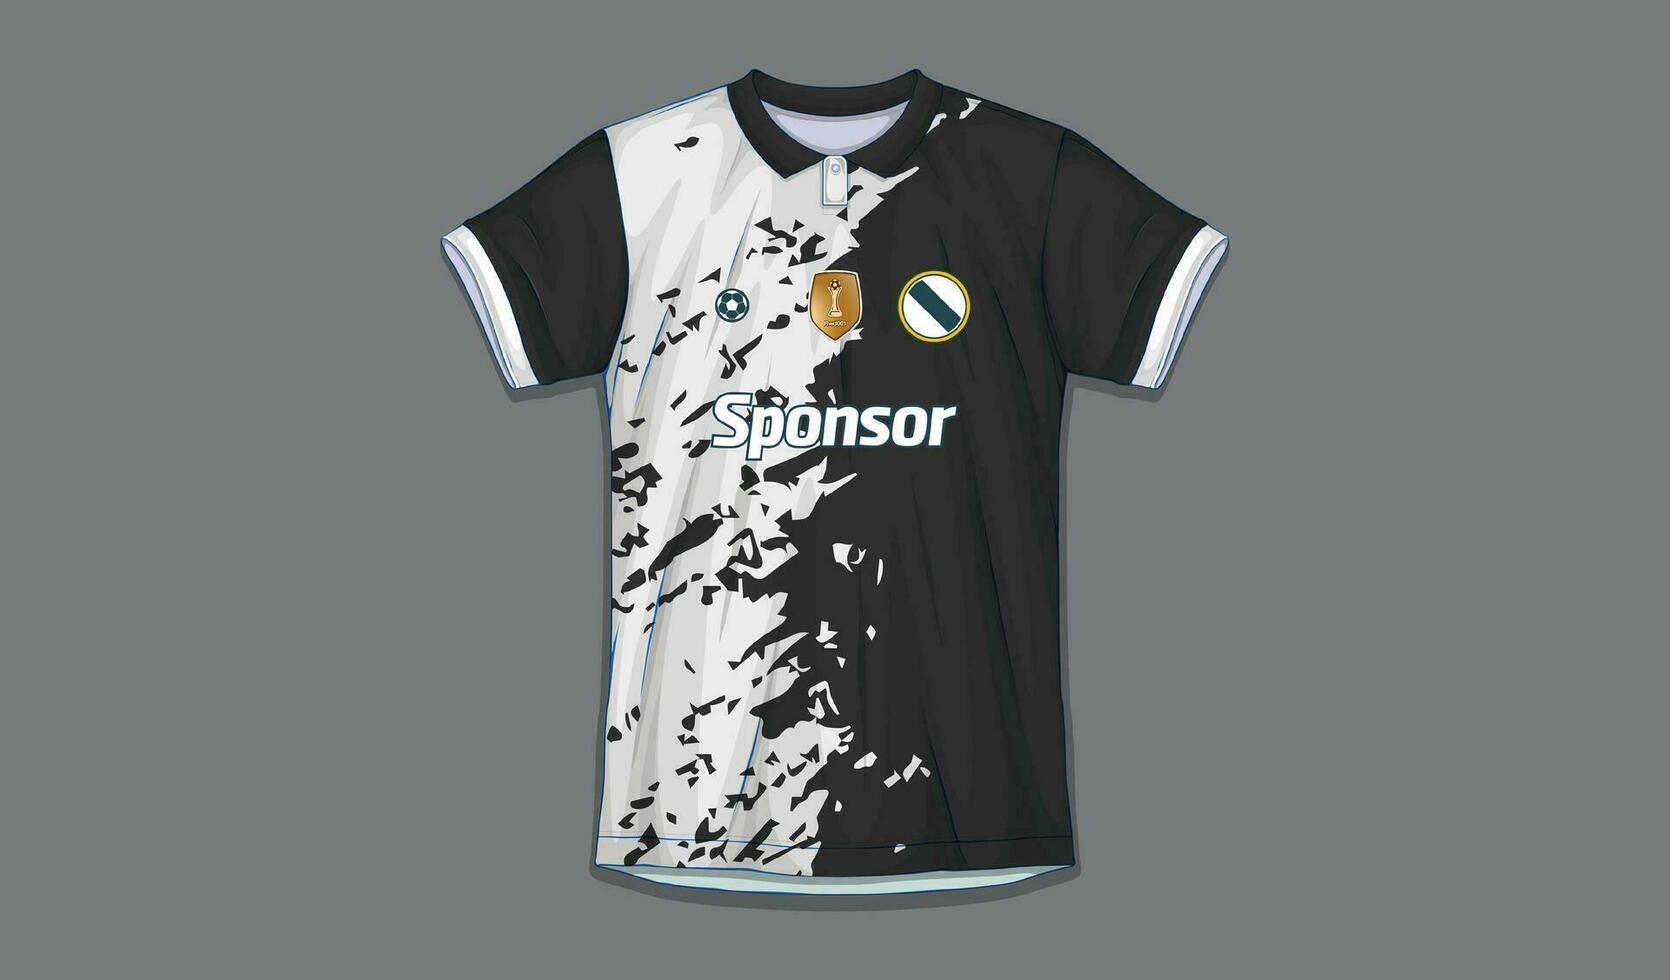 vector soccer jersey design for sublimation, sport t shirt design